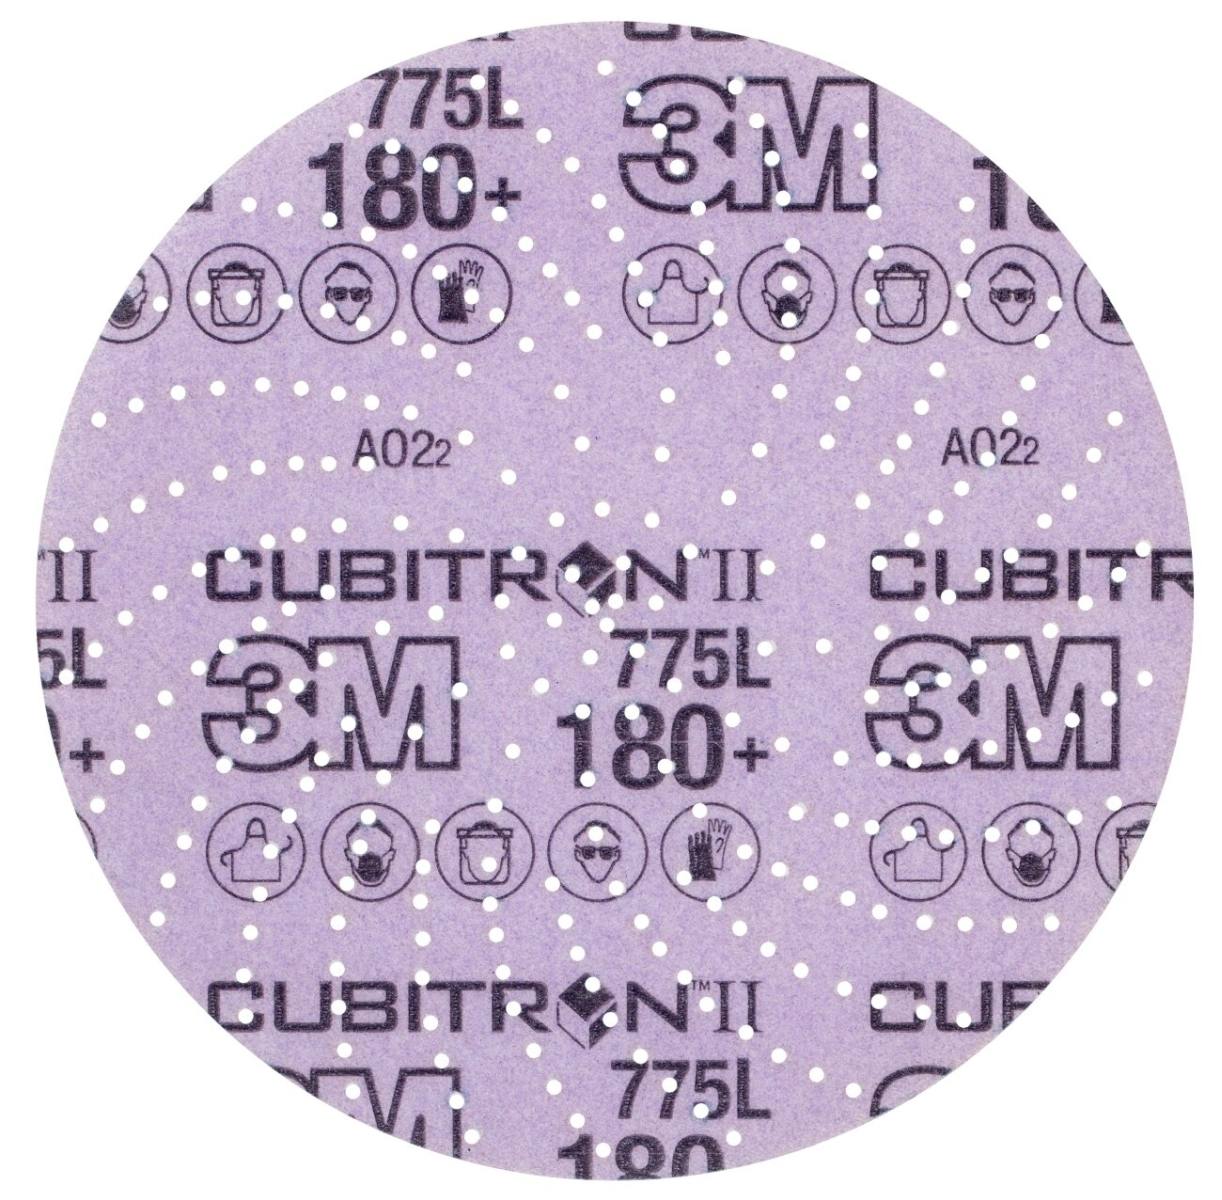 3M Cubitron II Hookit Disque pour film 775L, 150 mm, 180 , multihole #739401